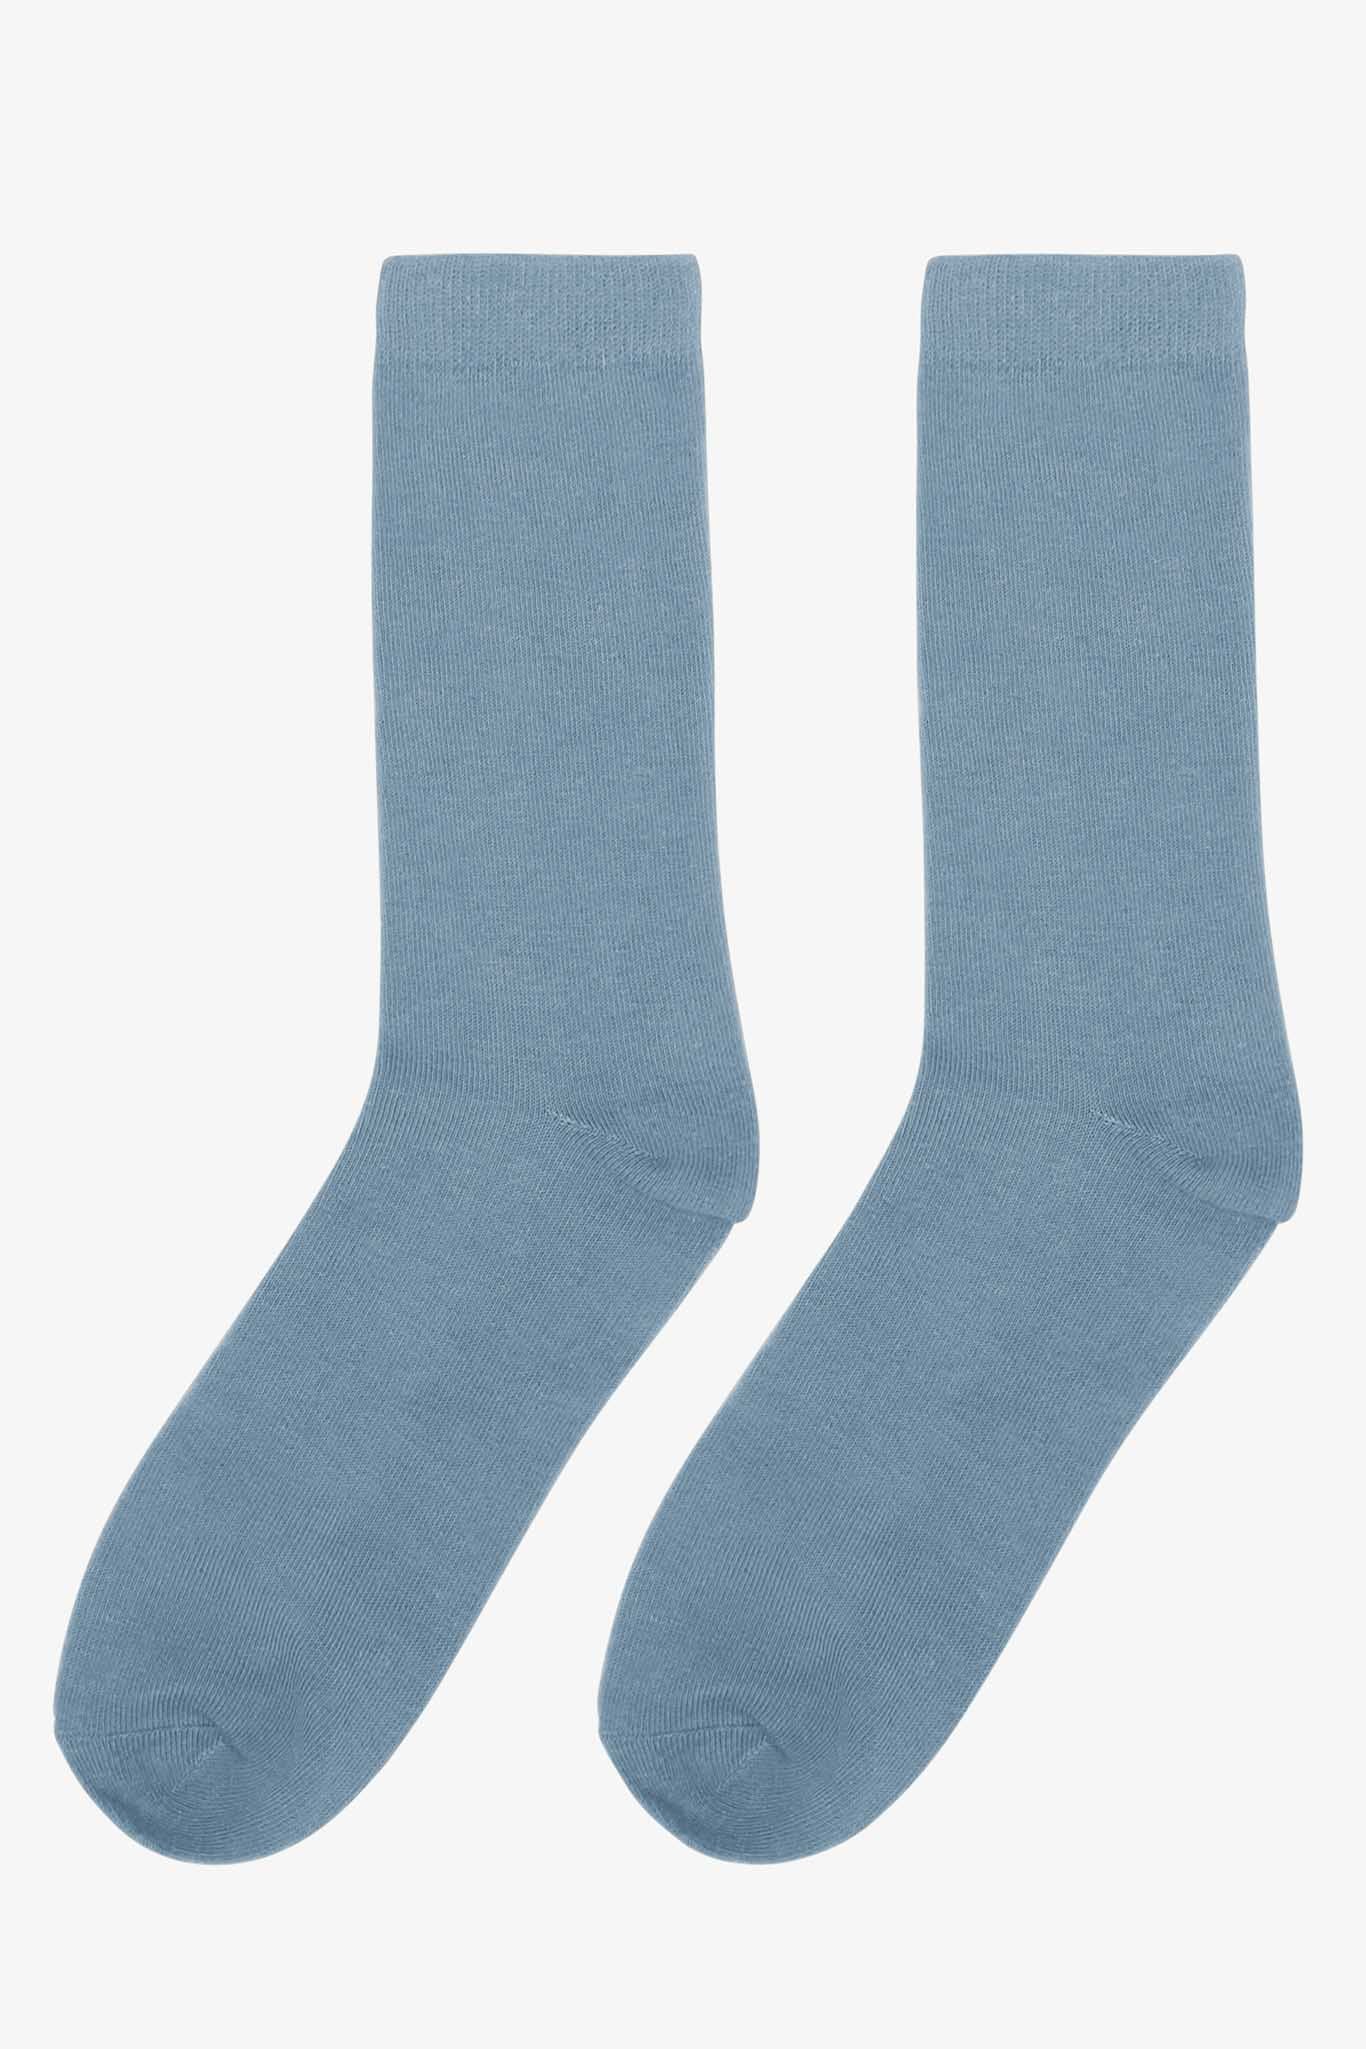 Groomsmen Socks - Dusty Blue | Birdy Grey